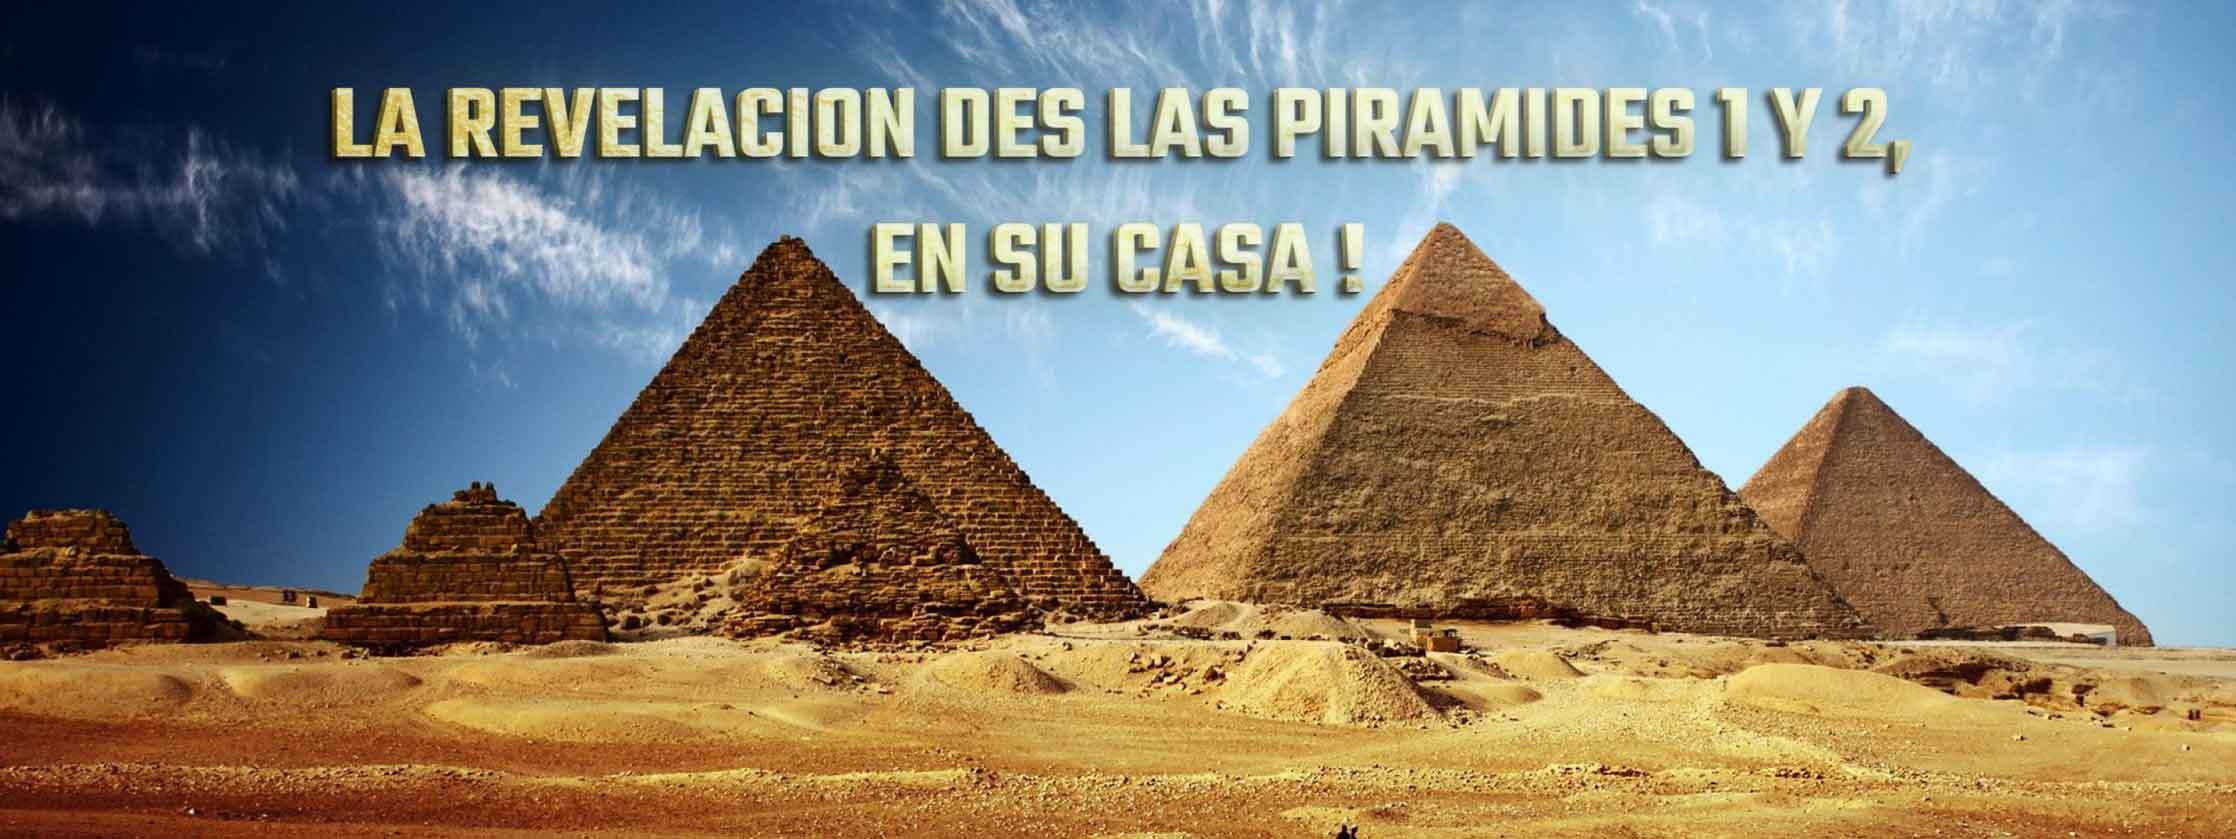 La Revelacion des las Piramides 1 y 2, en su casa !